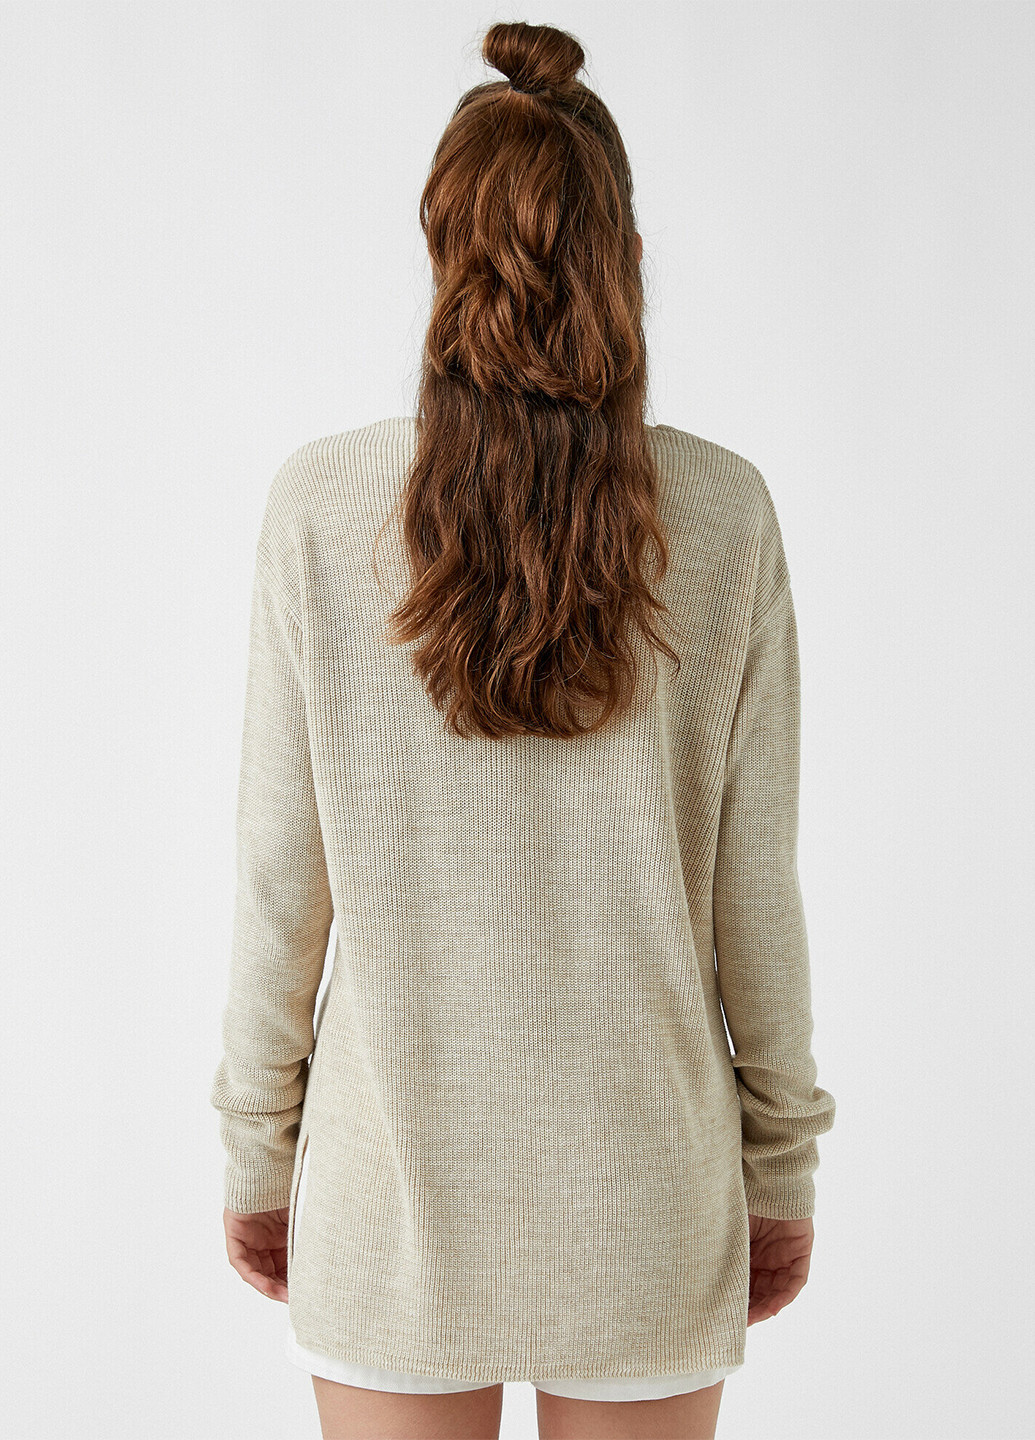 Светло-бежевый демисезонный пуловер пуловер KOTON